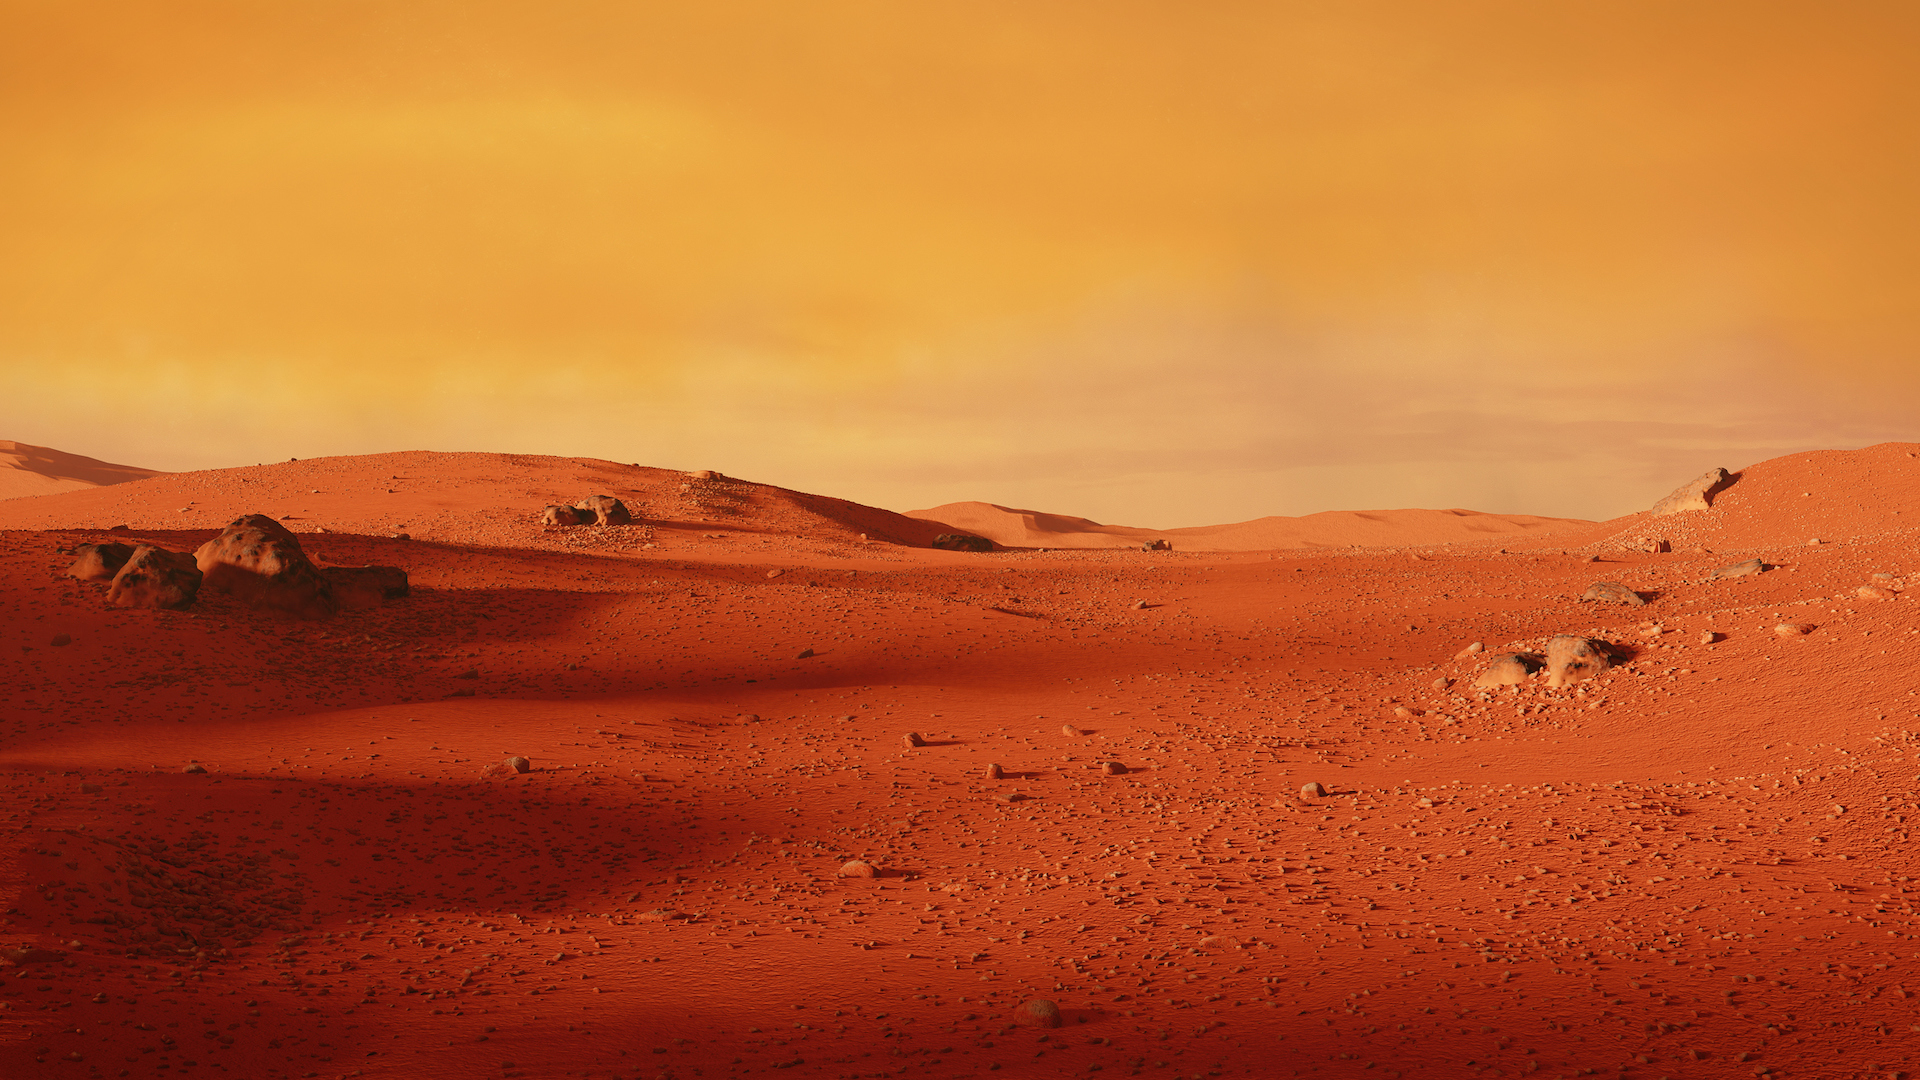 A Mars landscape